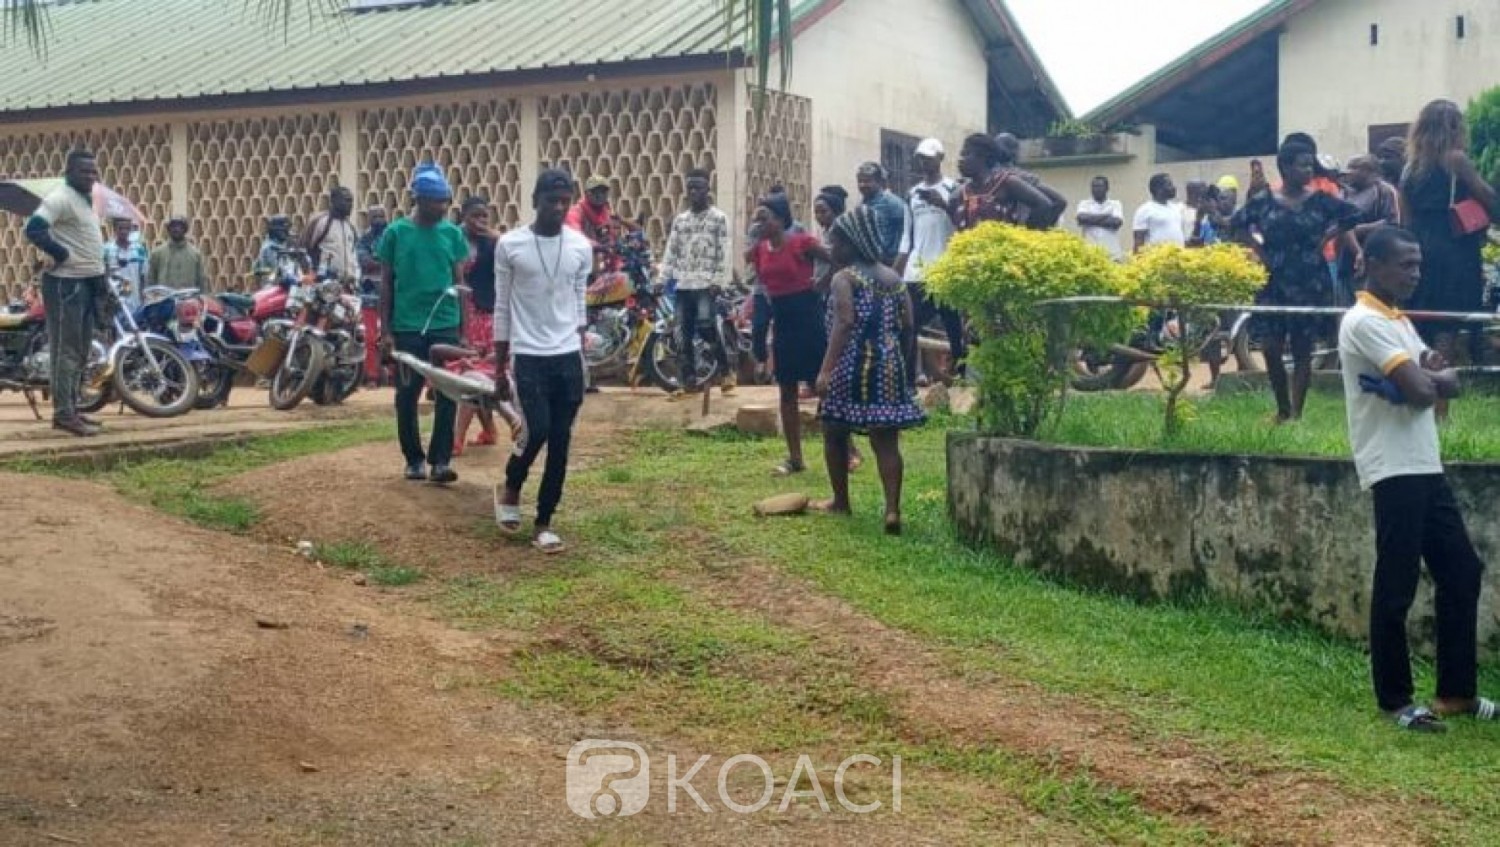 Cameroun : 6 morts et 13 blessés dans l'attaque d'une école primaire (premier bilan officiel)